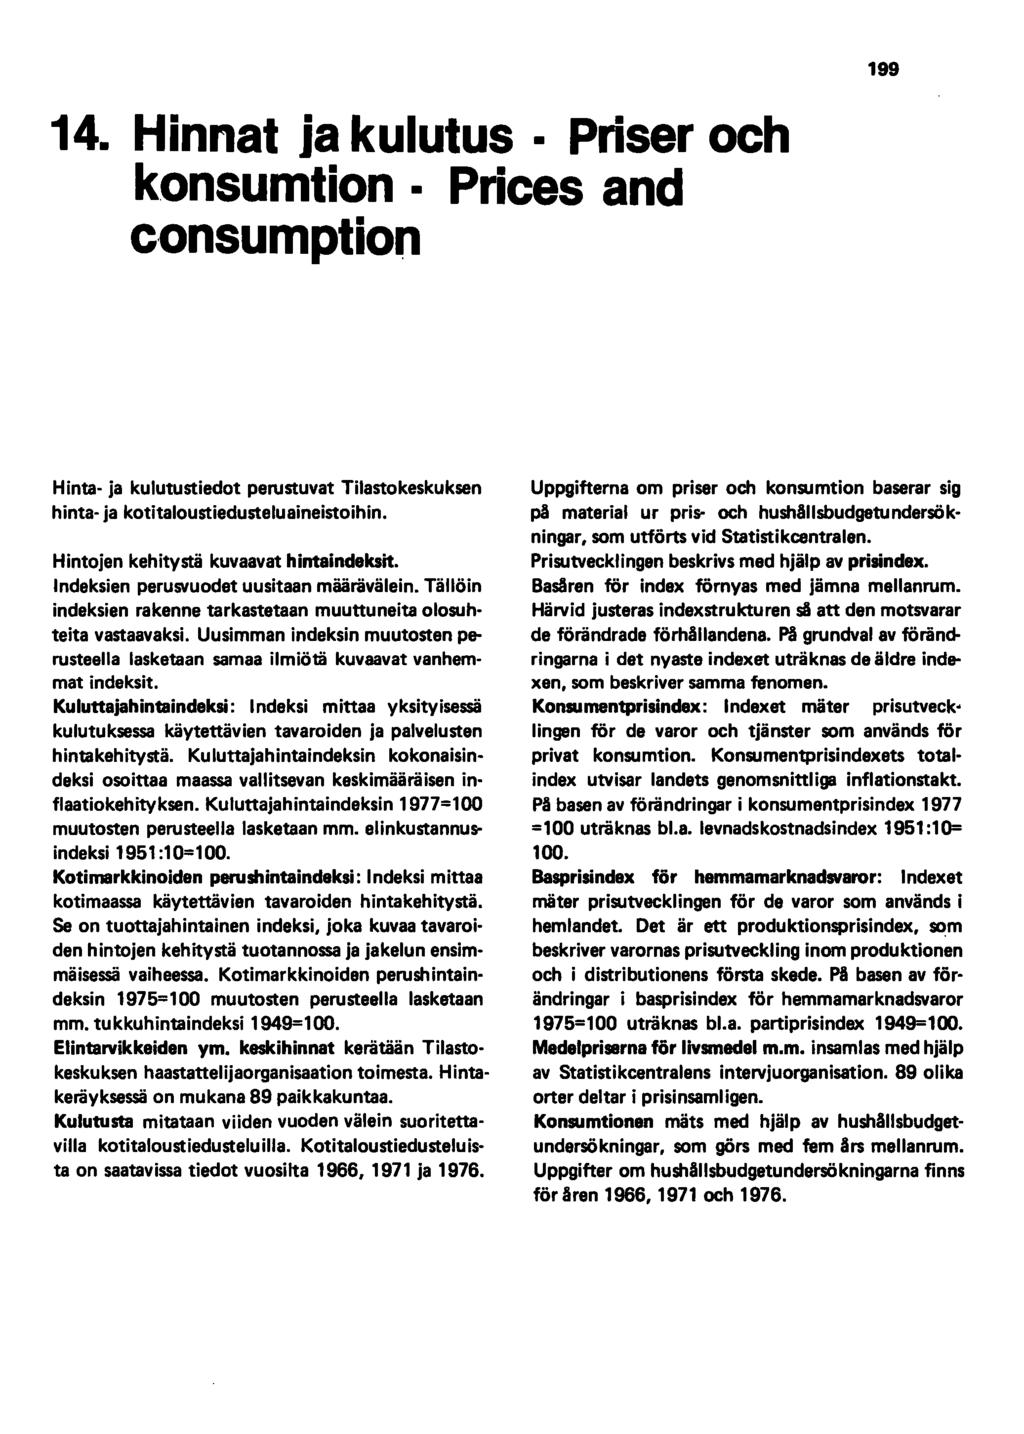 14. Hinnat ja kulutus Priser och konsumtion Prices and e onsumption 199 Hinta- ja kulutustiedot perustuvat Tilastokeskuksen hinta- ja kotitaloustiedusteluaineistoihin.